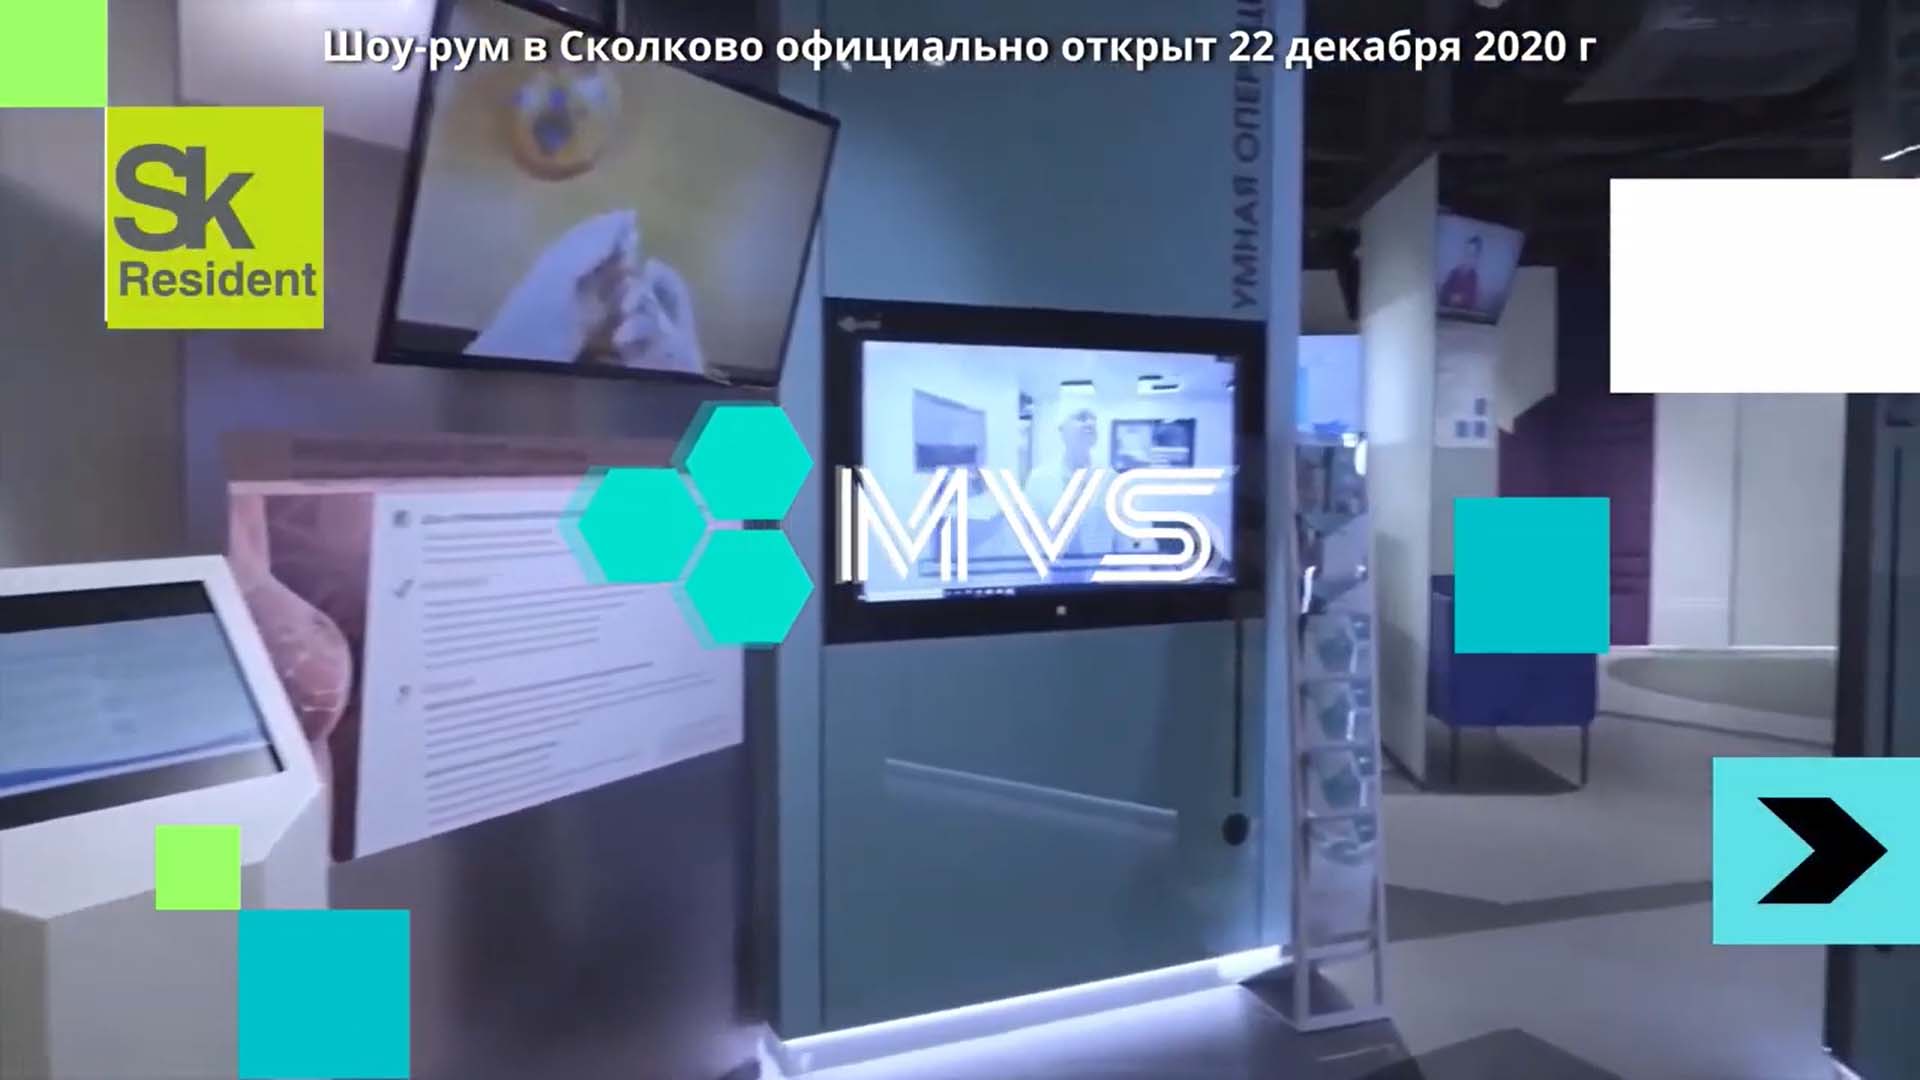 Шоурум Medical Visual Systems – теперь и в Сколково. Умная операционная MVS.